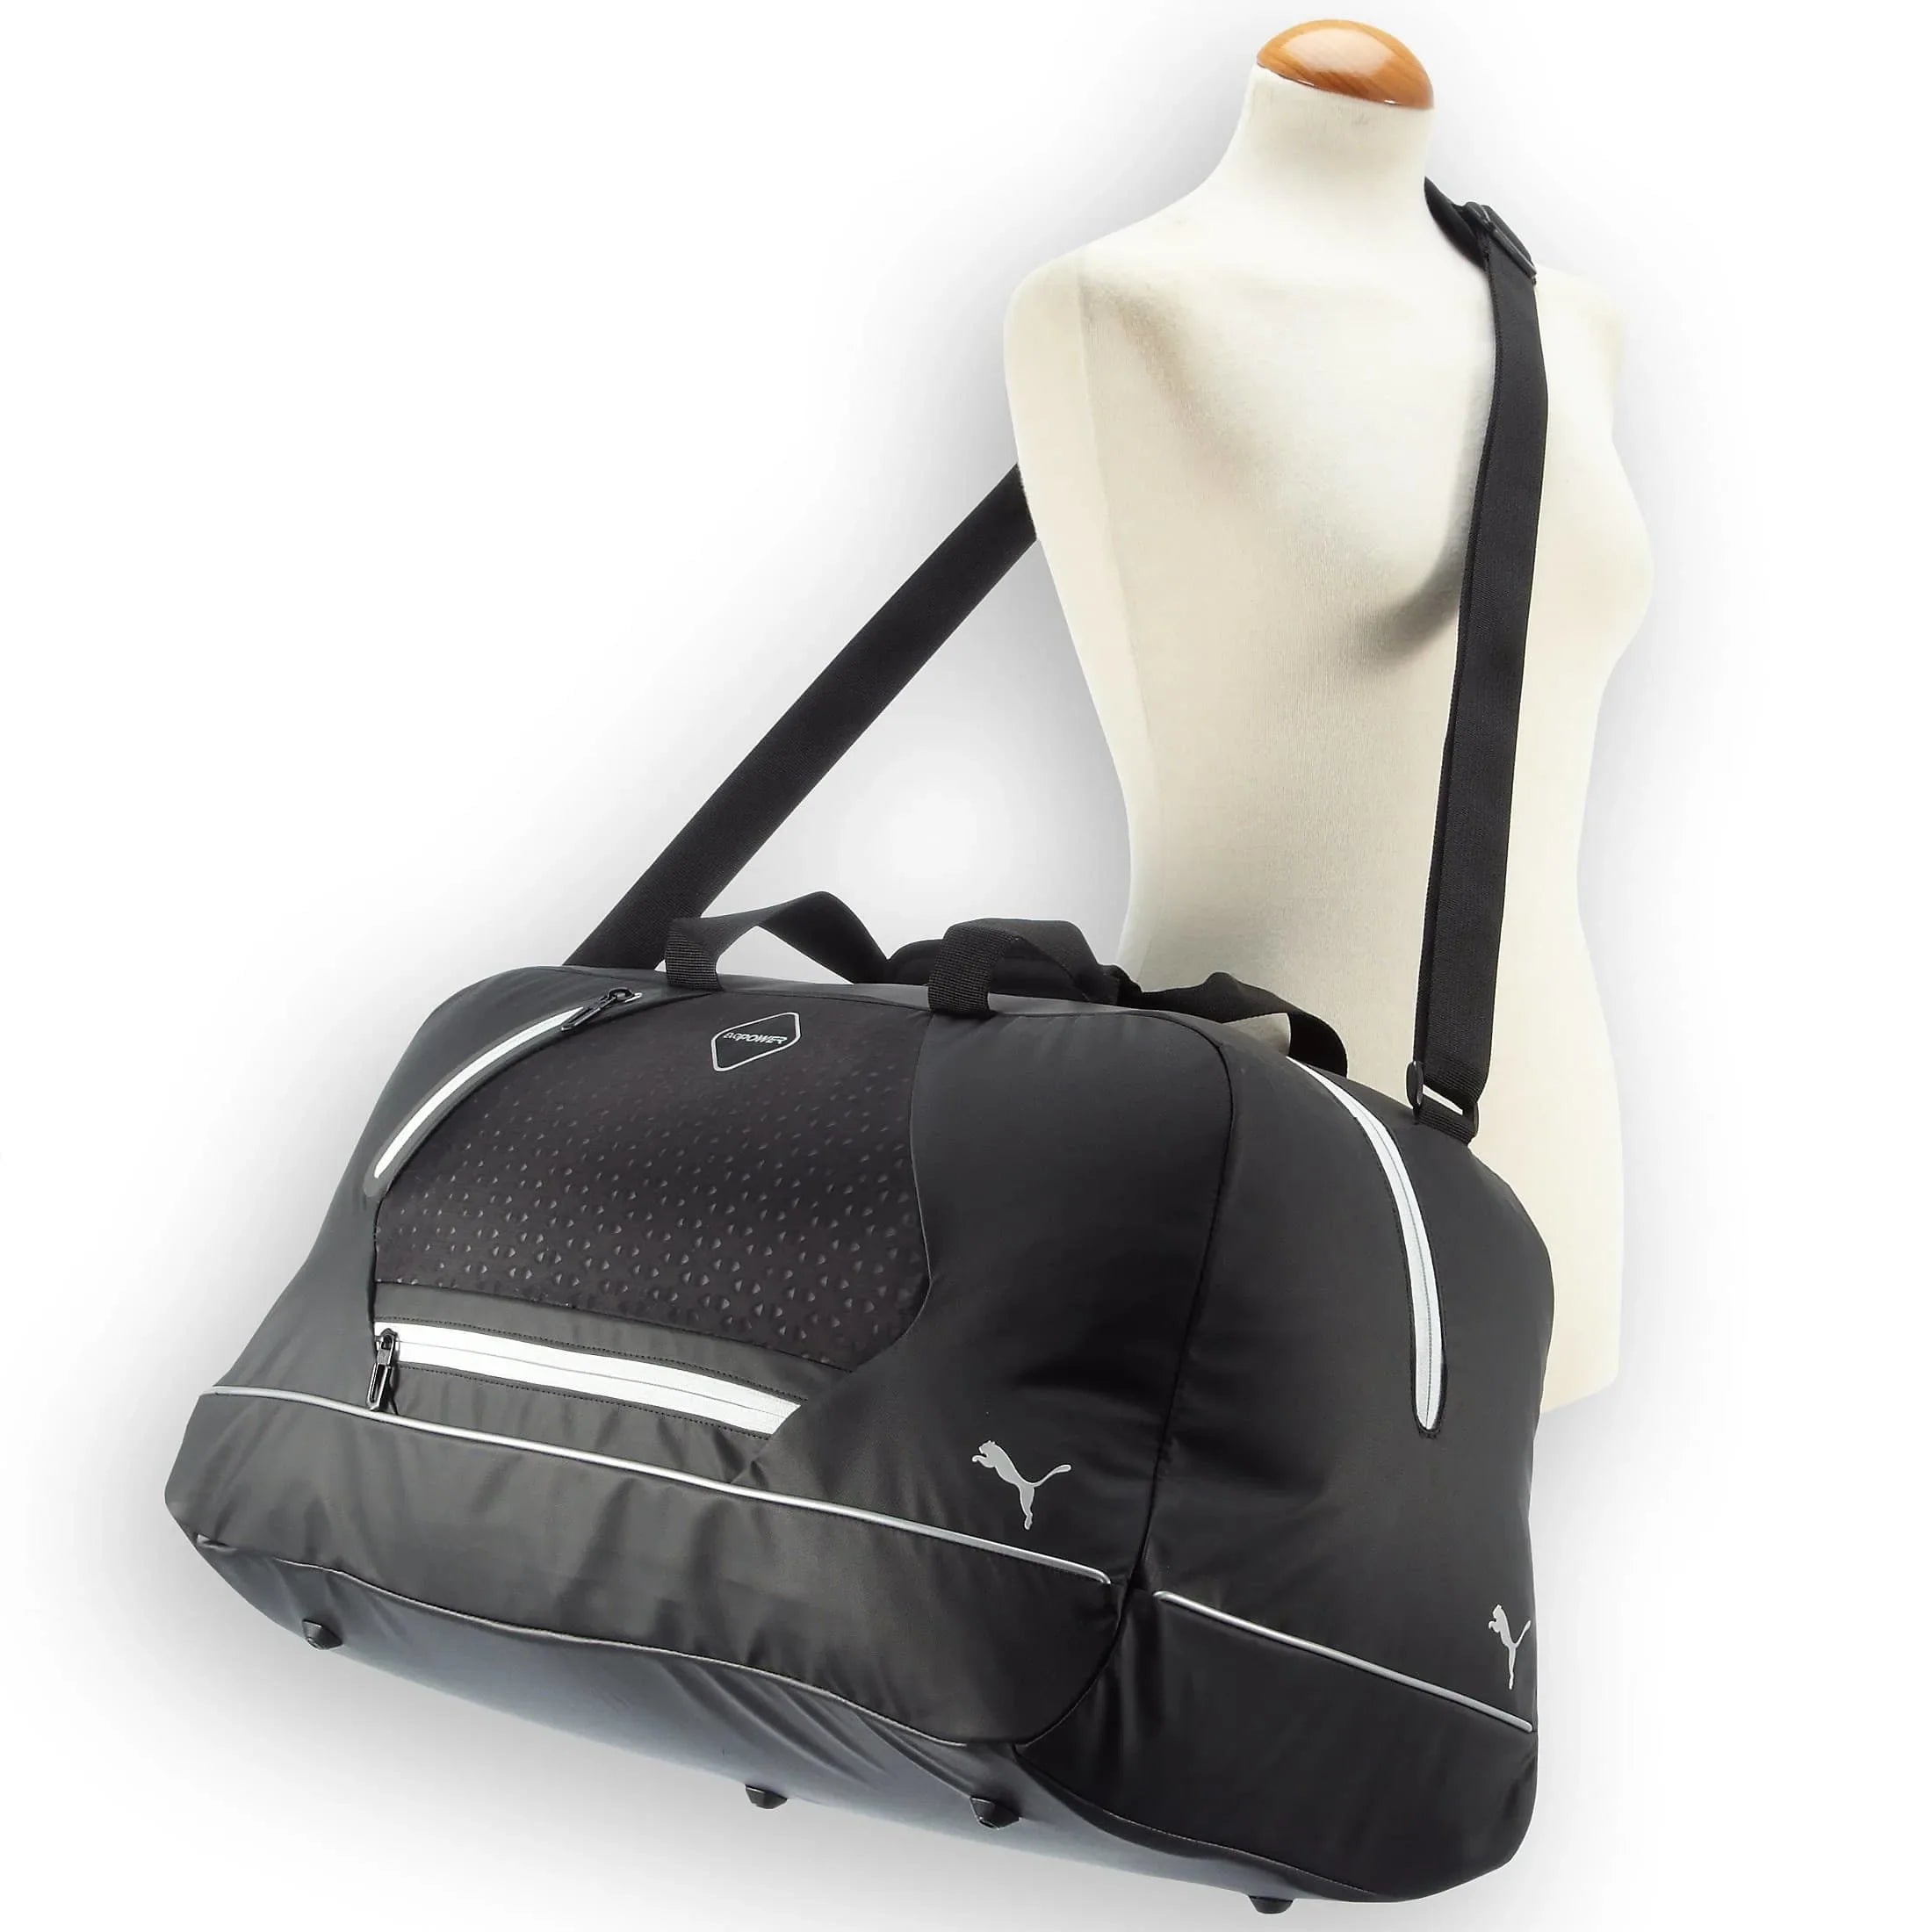 Puma evoPOWER Premium Medium Bag sac de sport 55 cm - noir